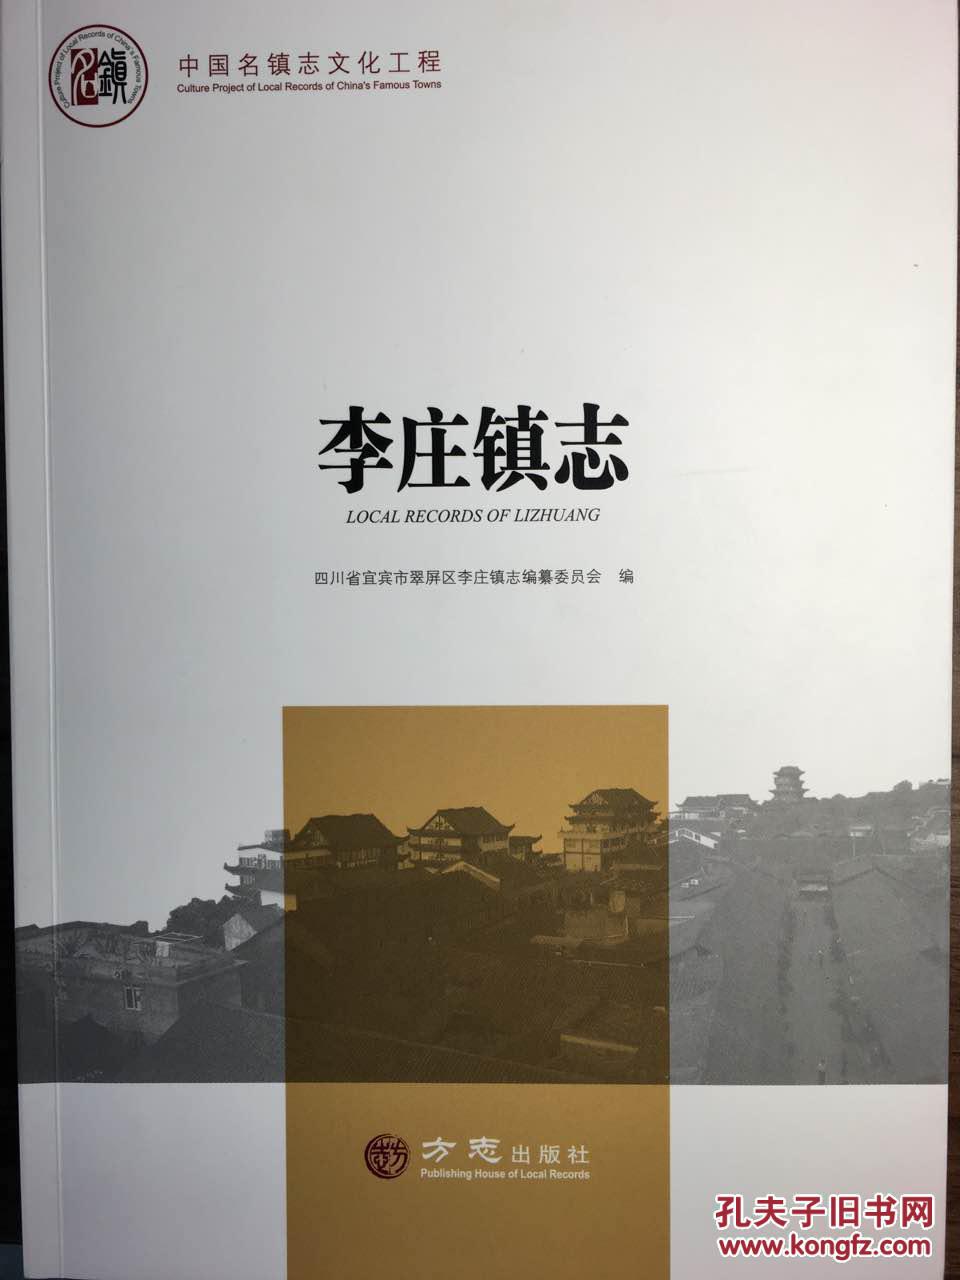 四川省地方志系列丛书------中国名镇系列-------【李庄镇志】-------虒人荣誉珍藏